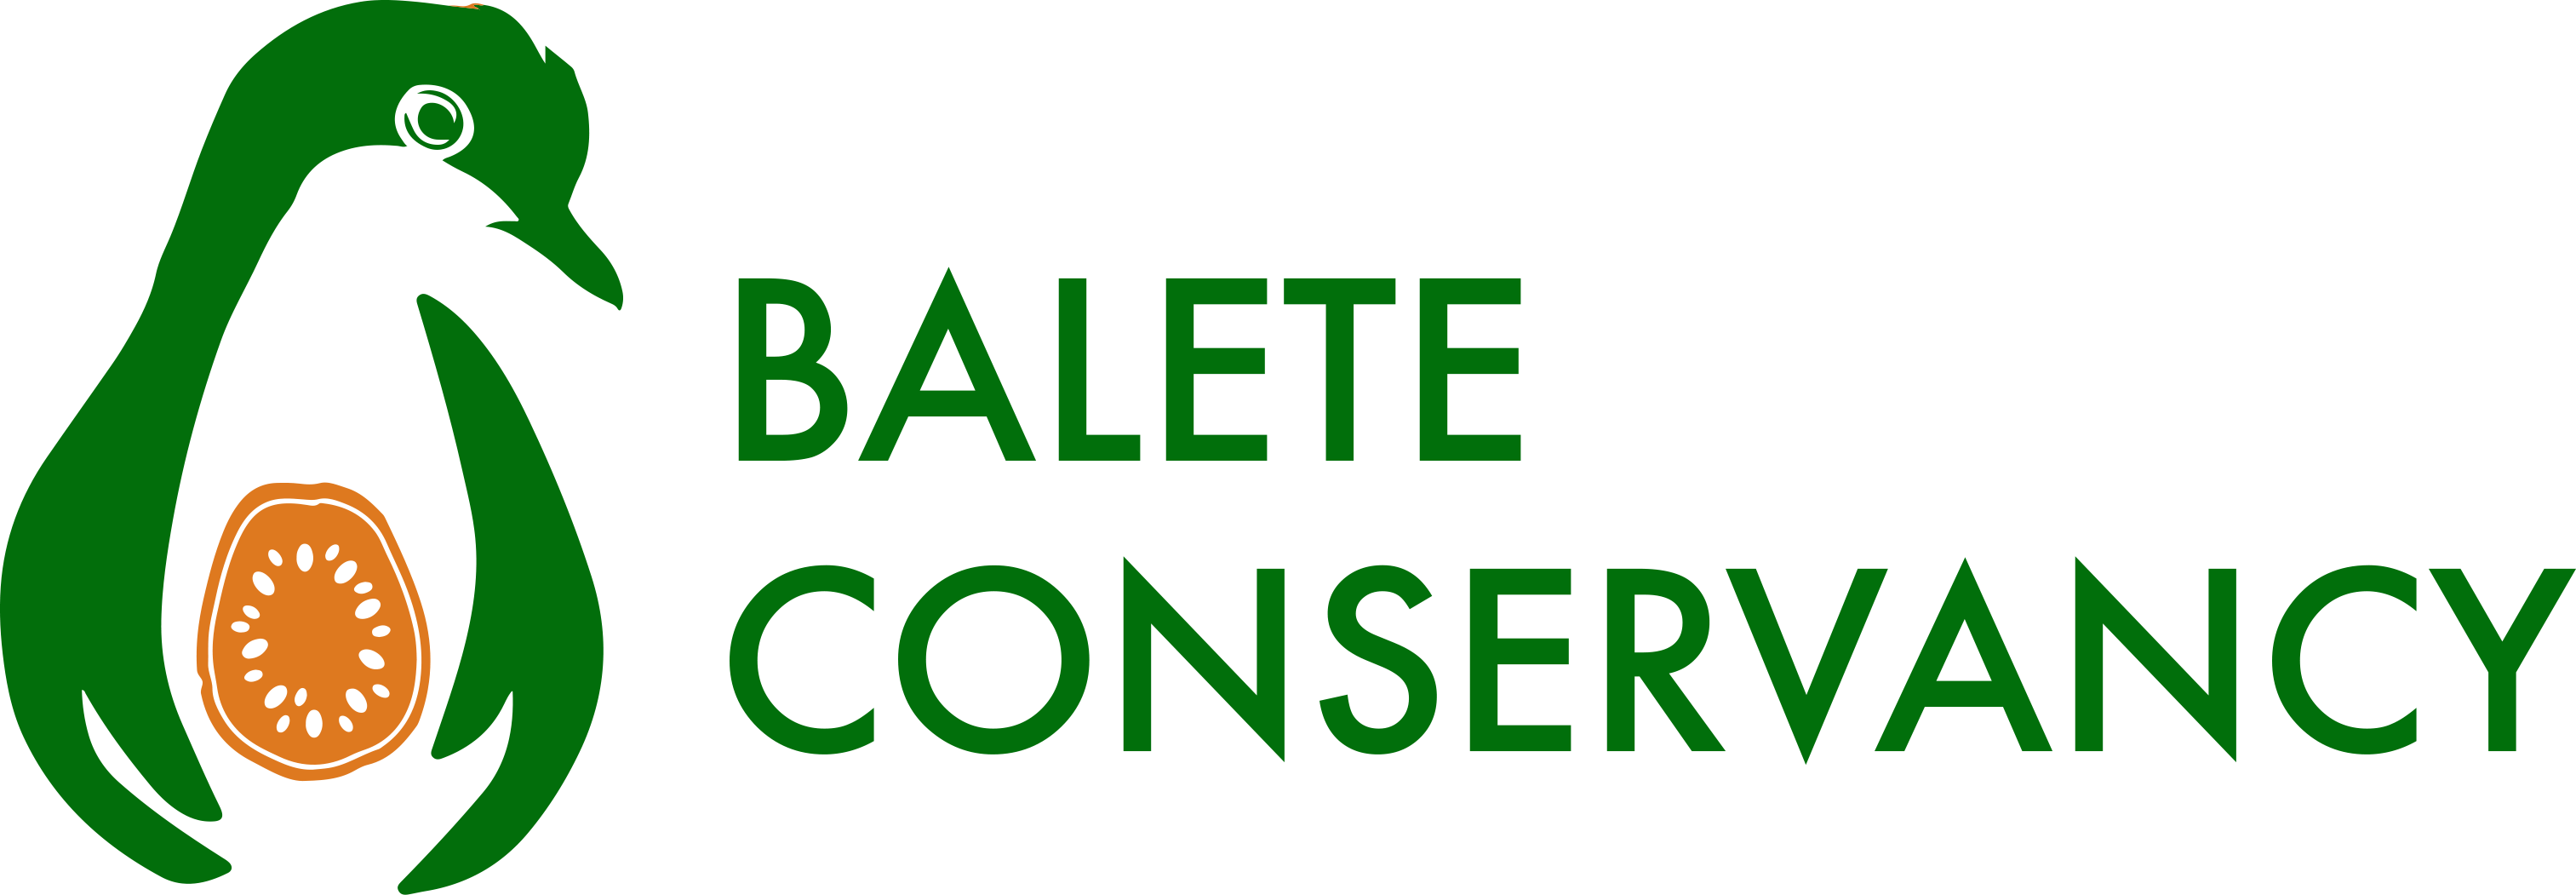 Balete Conservancy